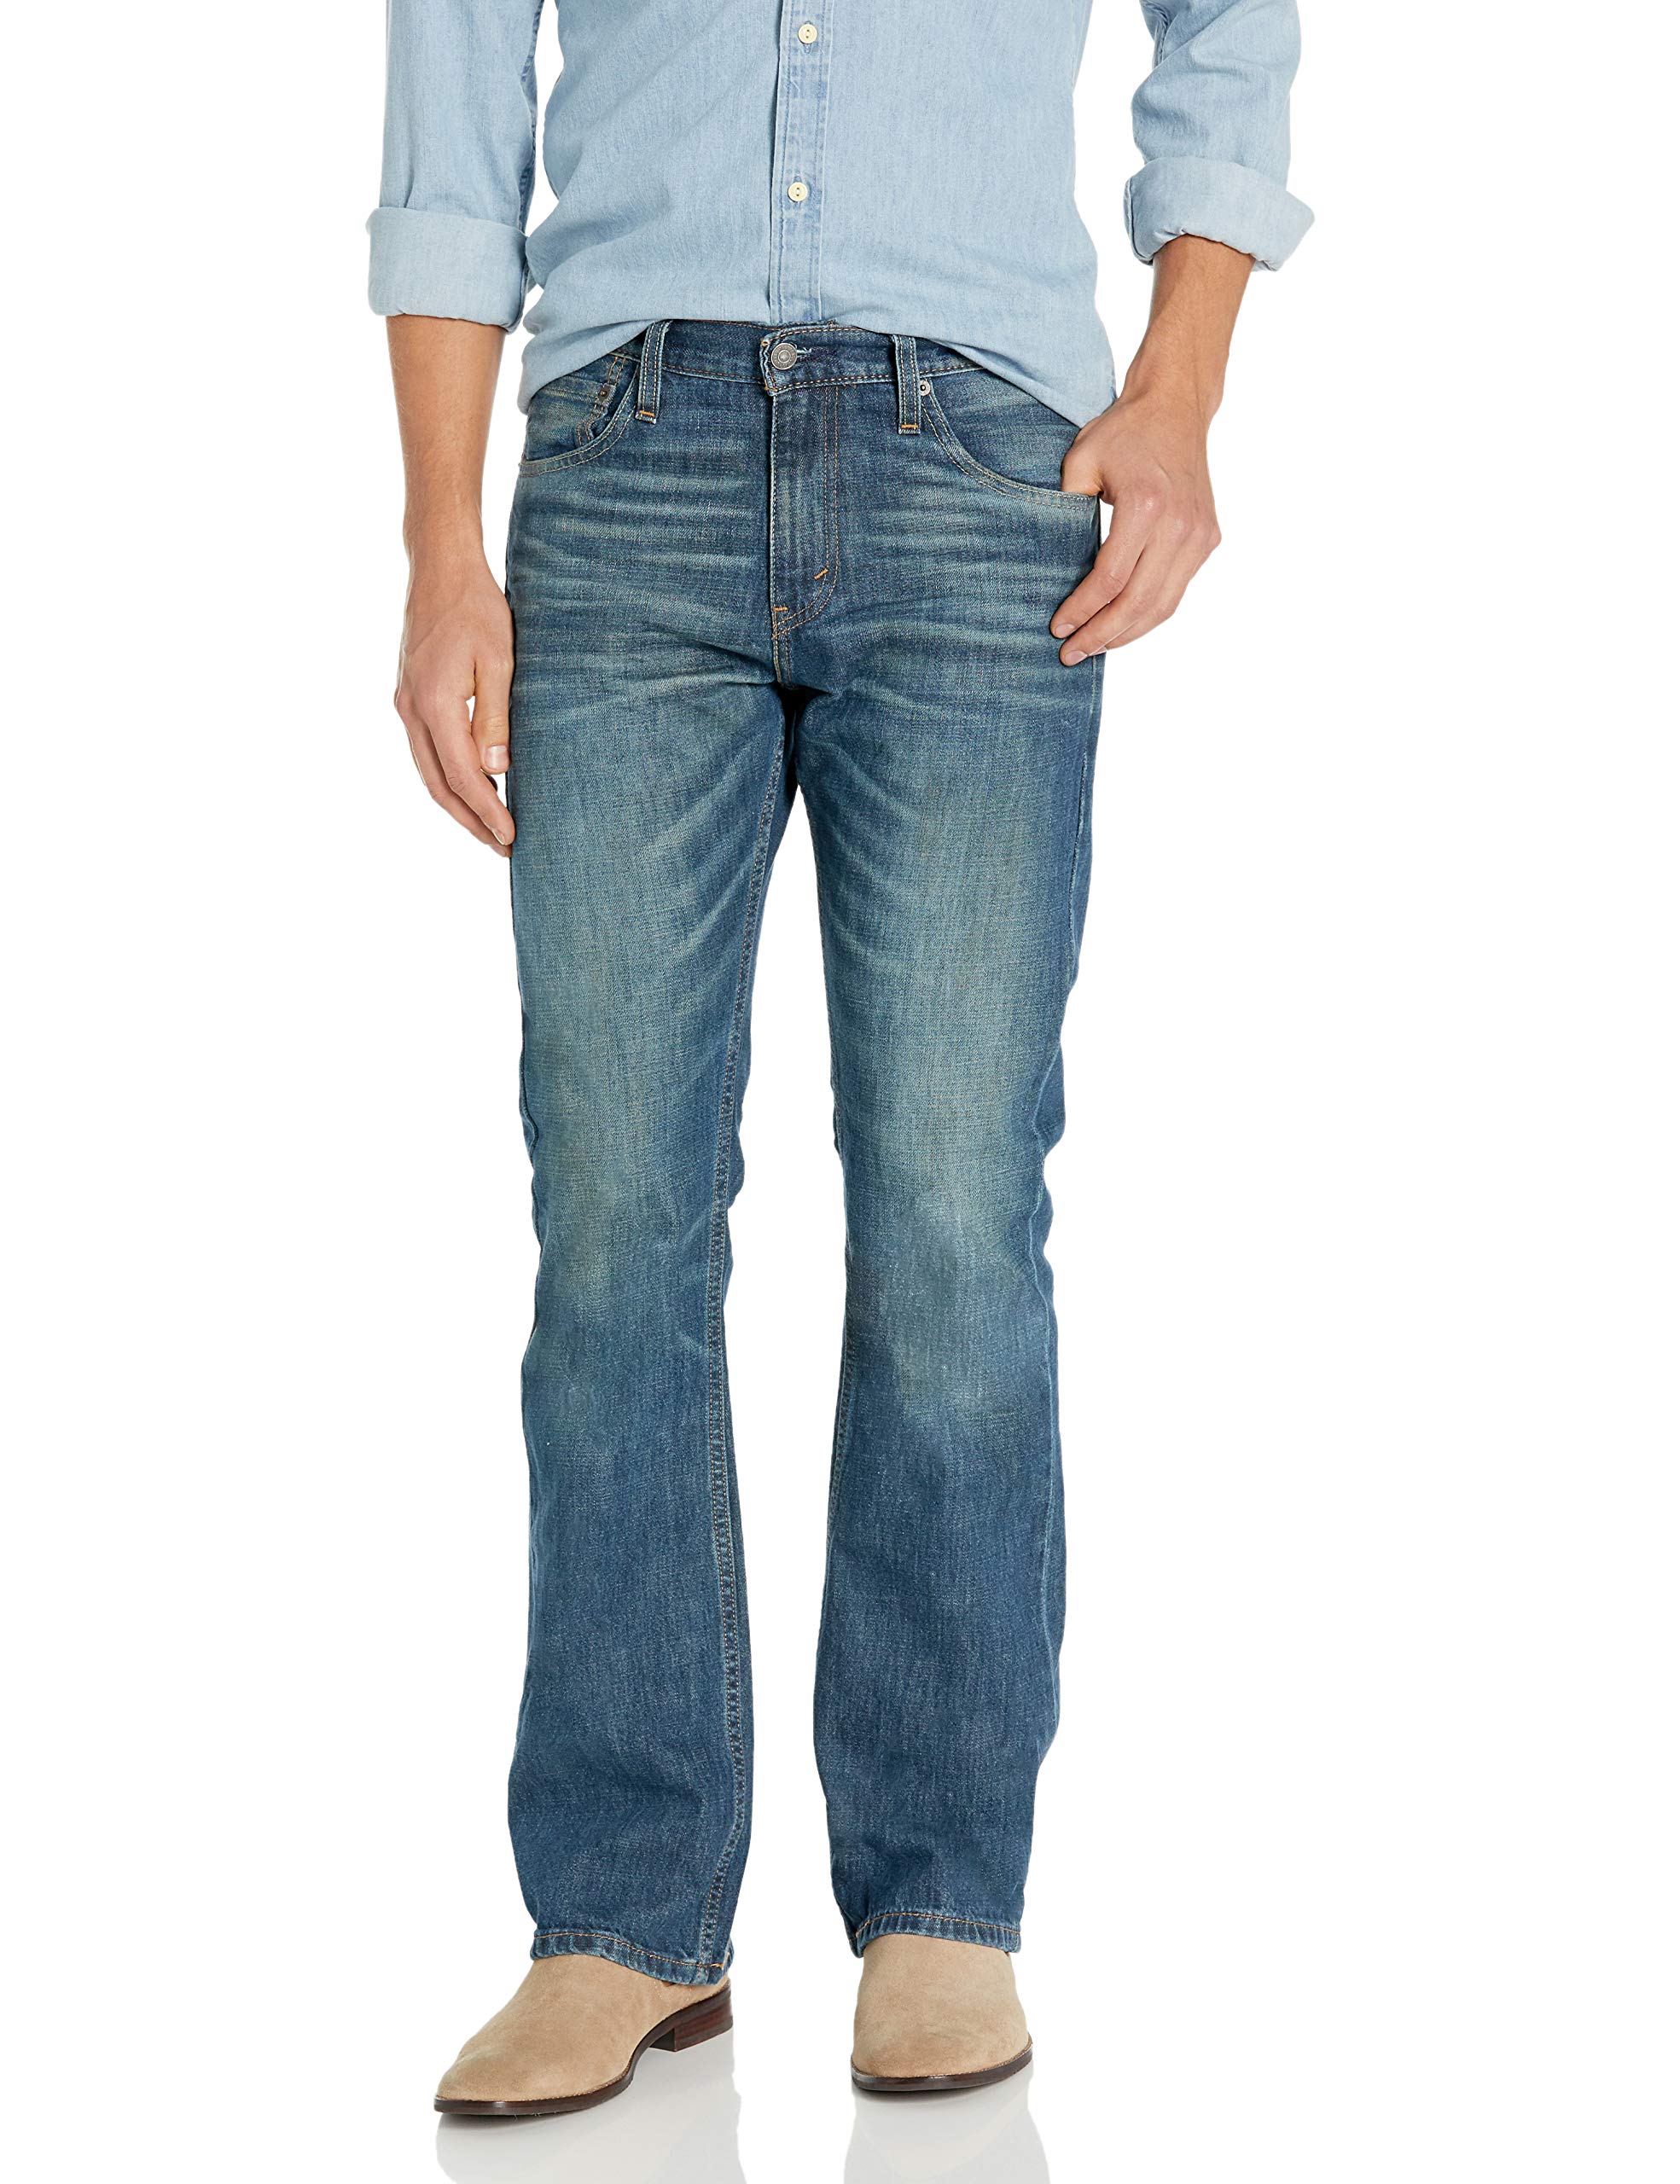 Actualizar 30+ imagen 527 slim bootcut levi’s men’s jeans